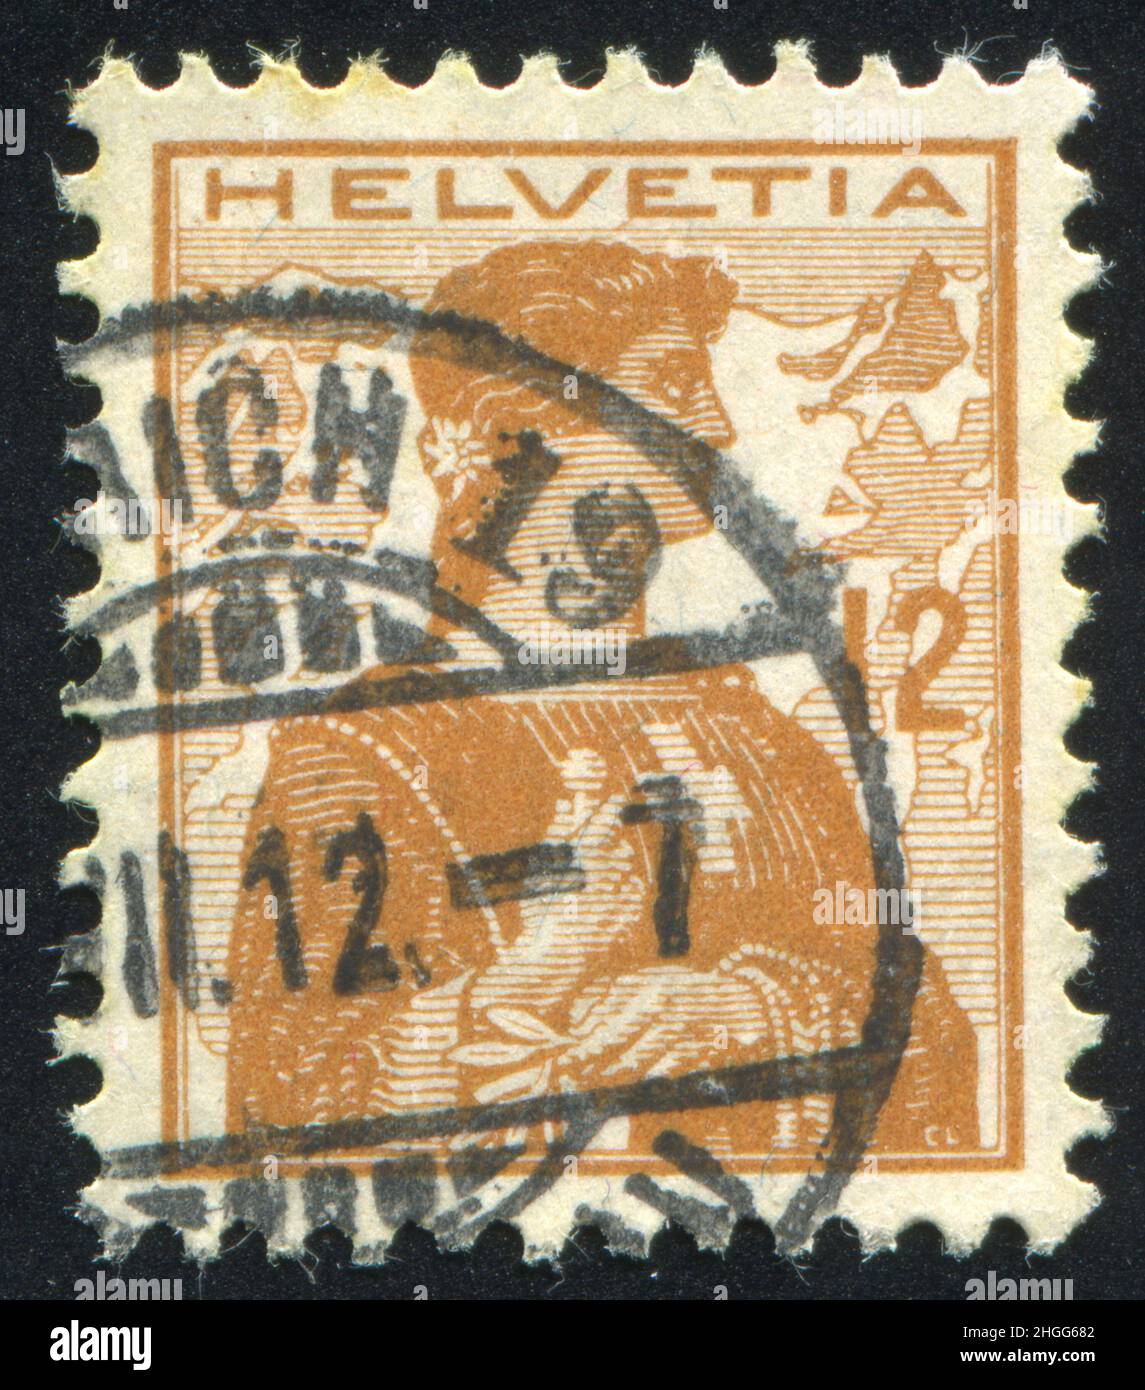 SCHWEIZ - UM 1907: Briefmarke gedruckt von der Schweiz, zeigt Helvetia, um 1907. Stockfoto